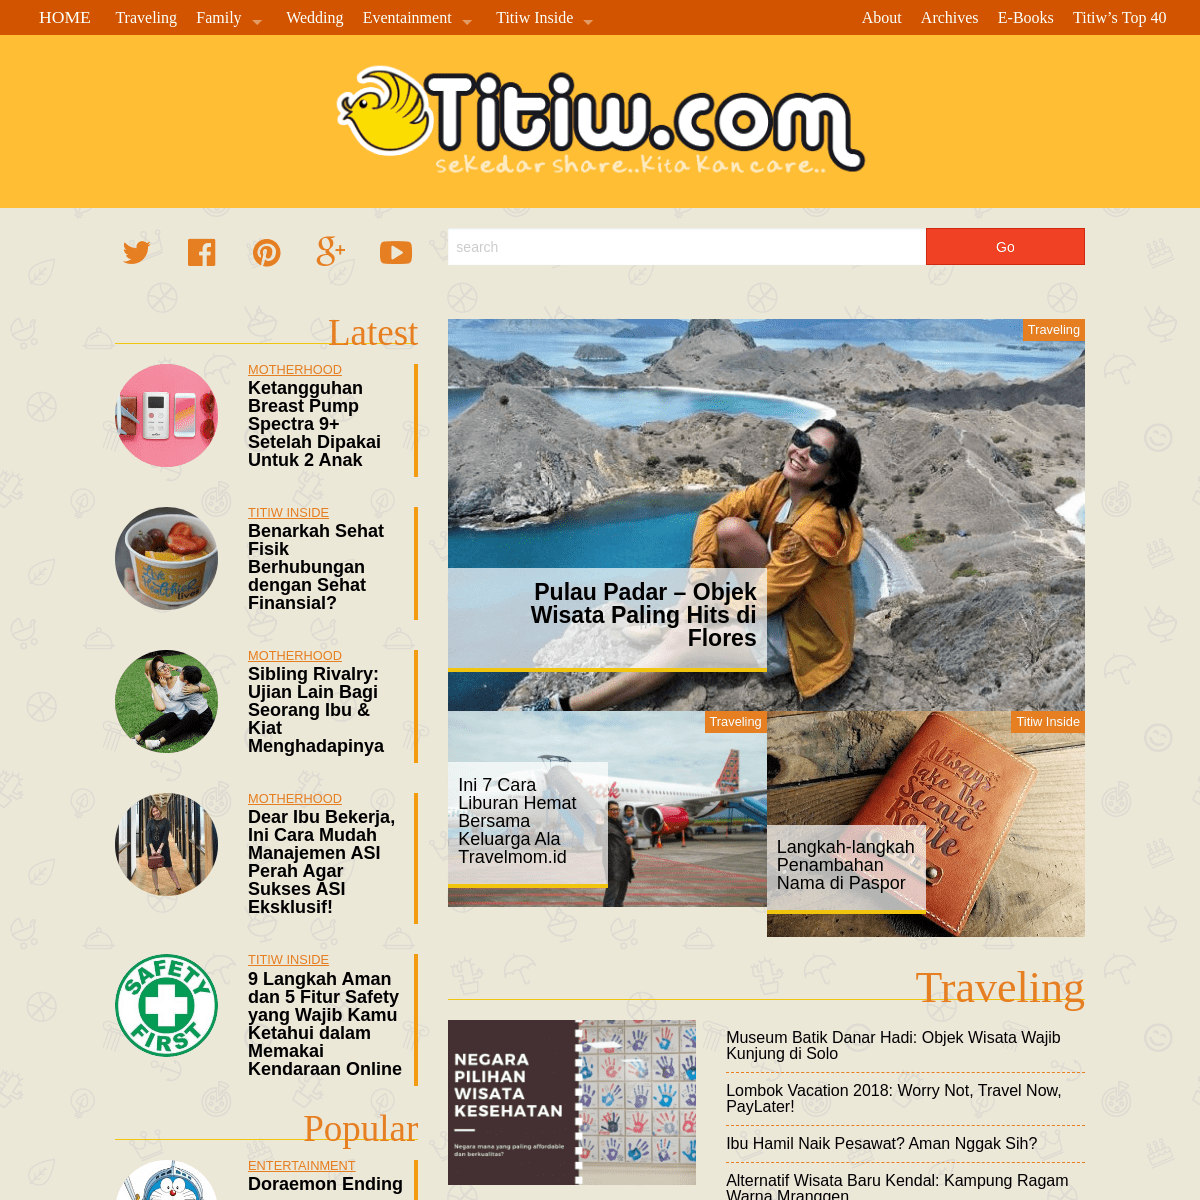 titiw.com — Sekedar Share kita kan Care